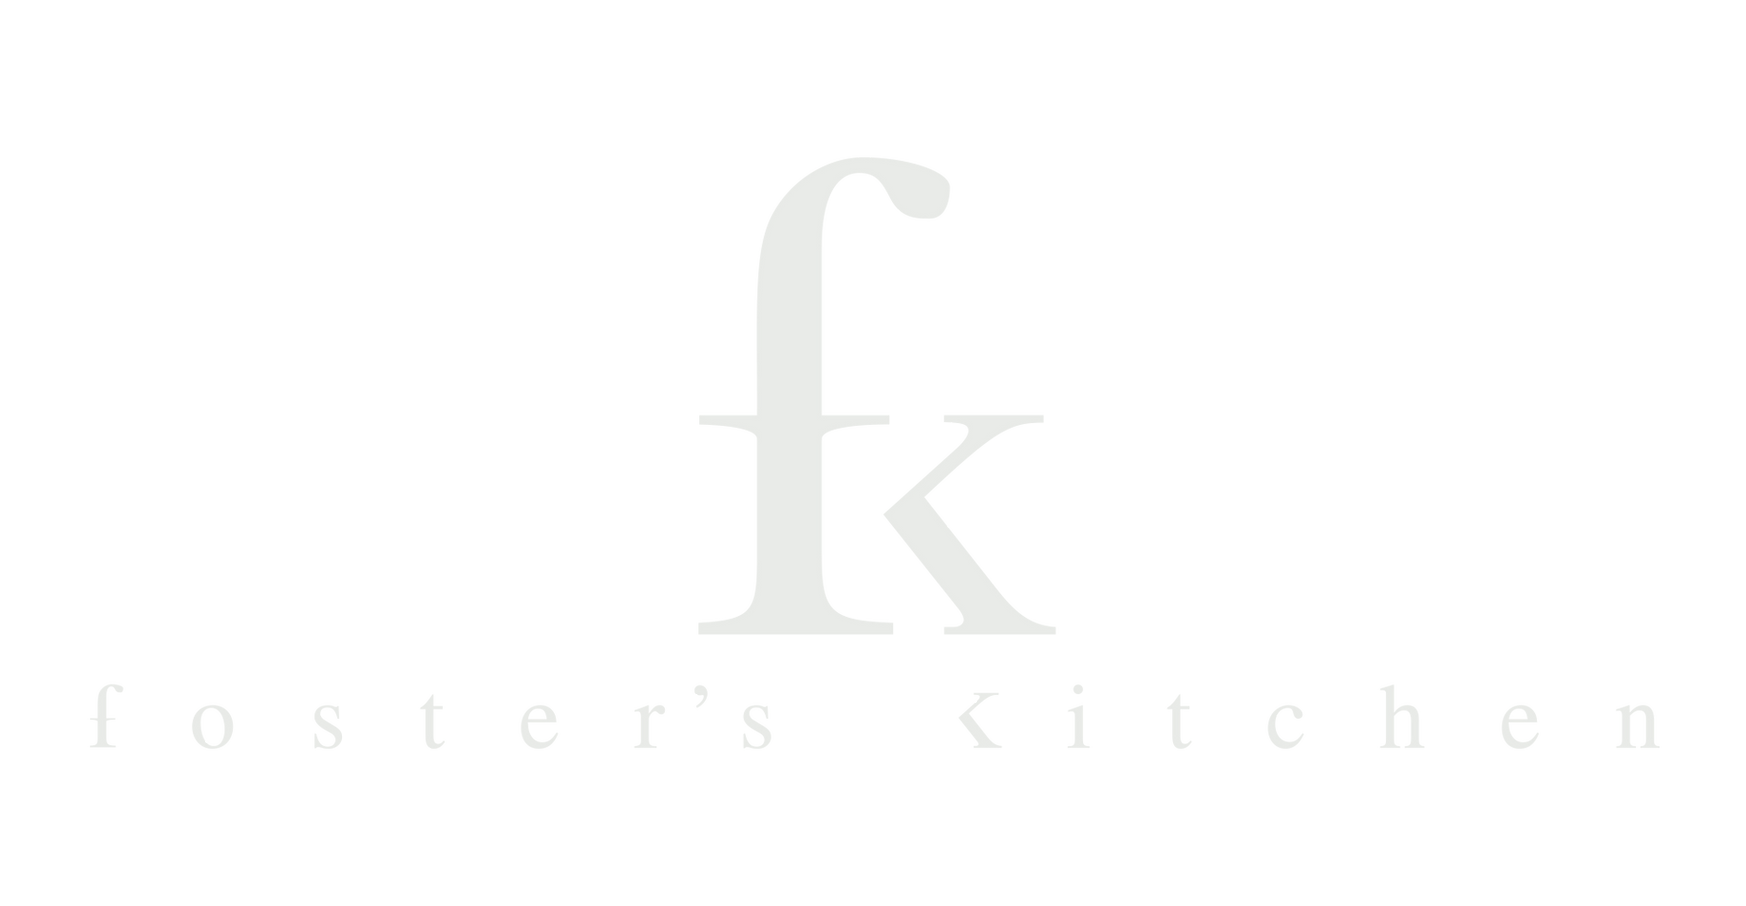 Fk - Foster's Kitchen